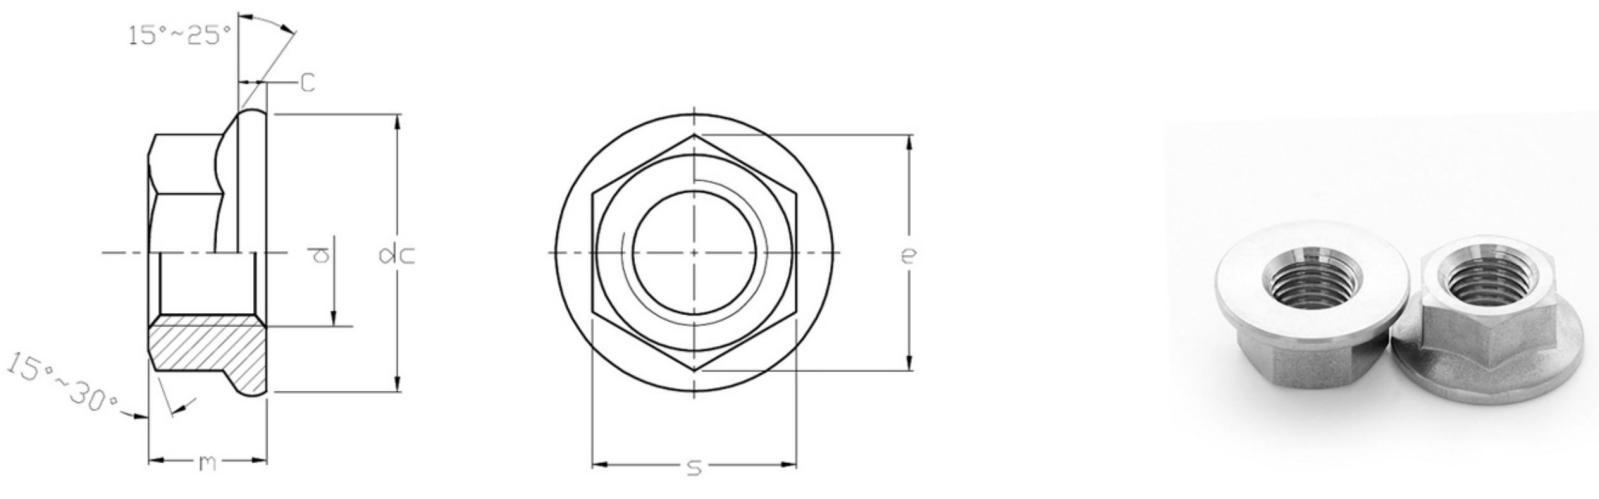 Tuercas hexagonales con reborde ISO 4161